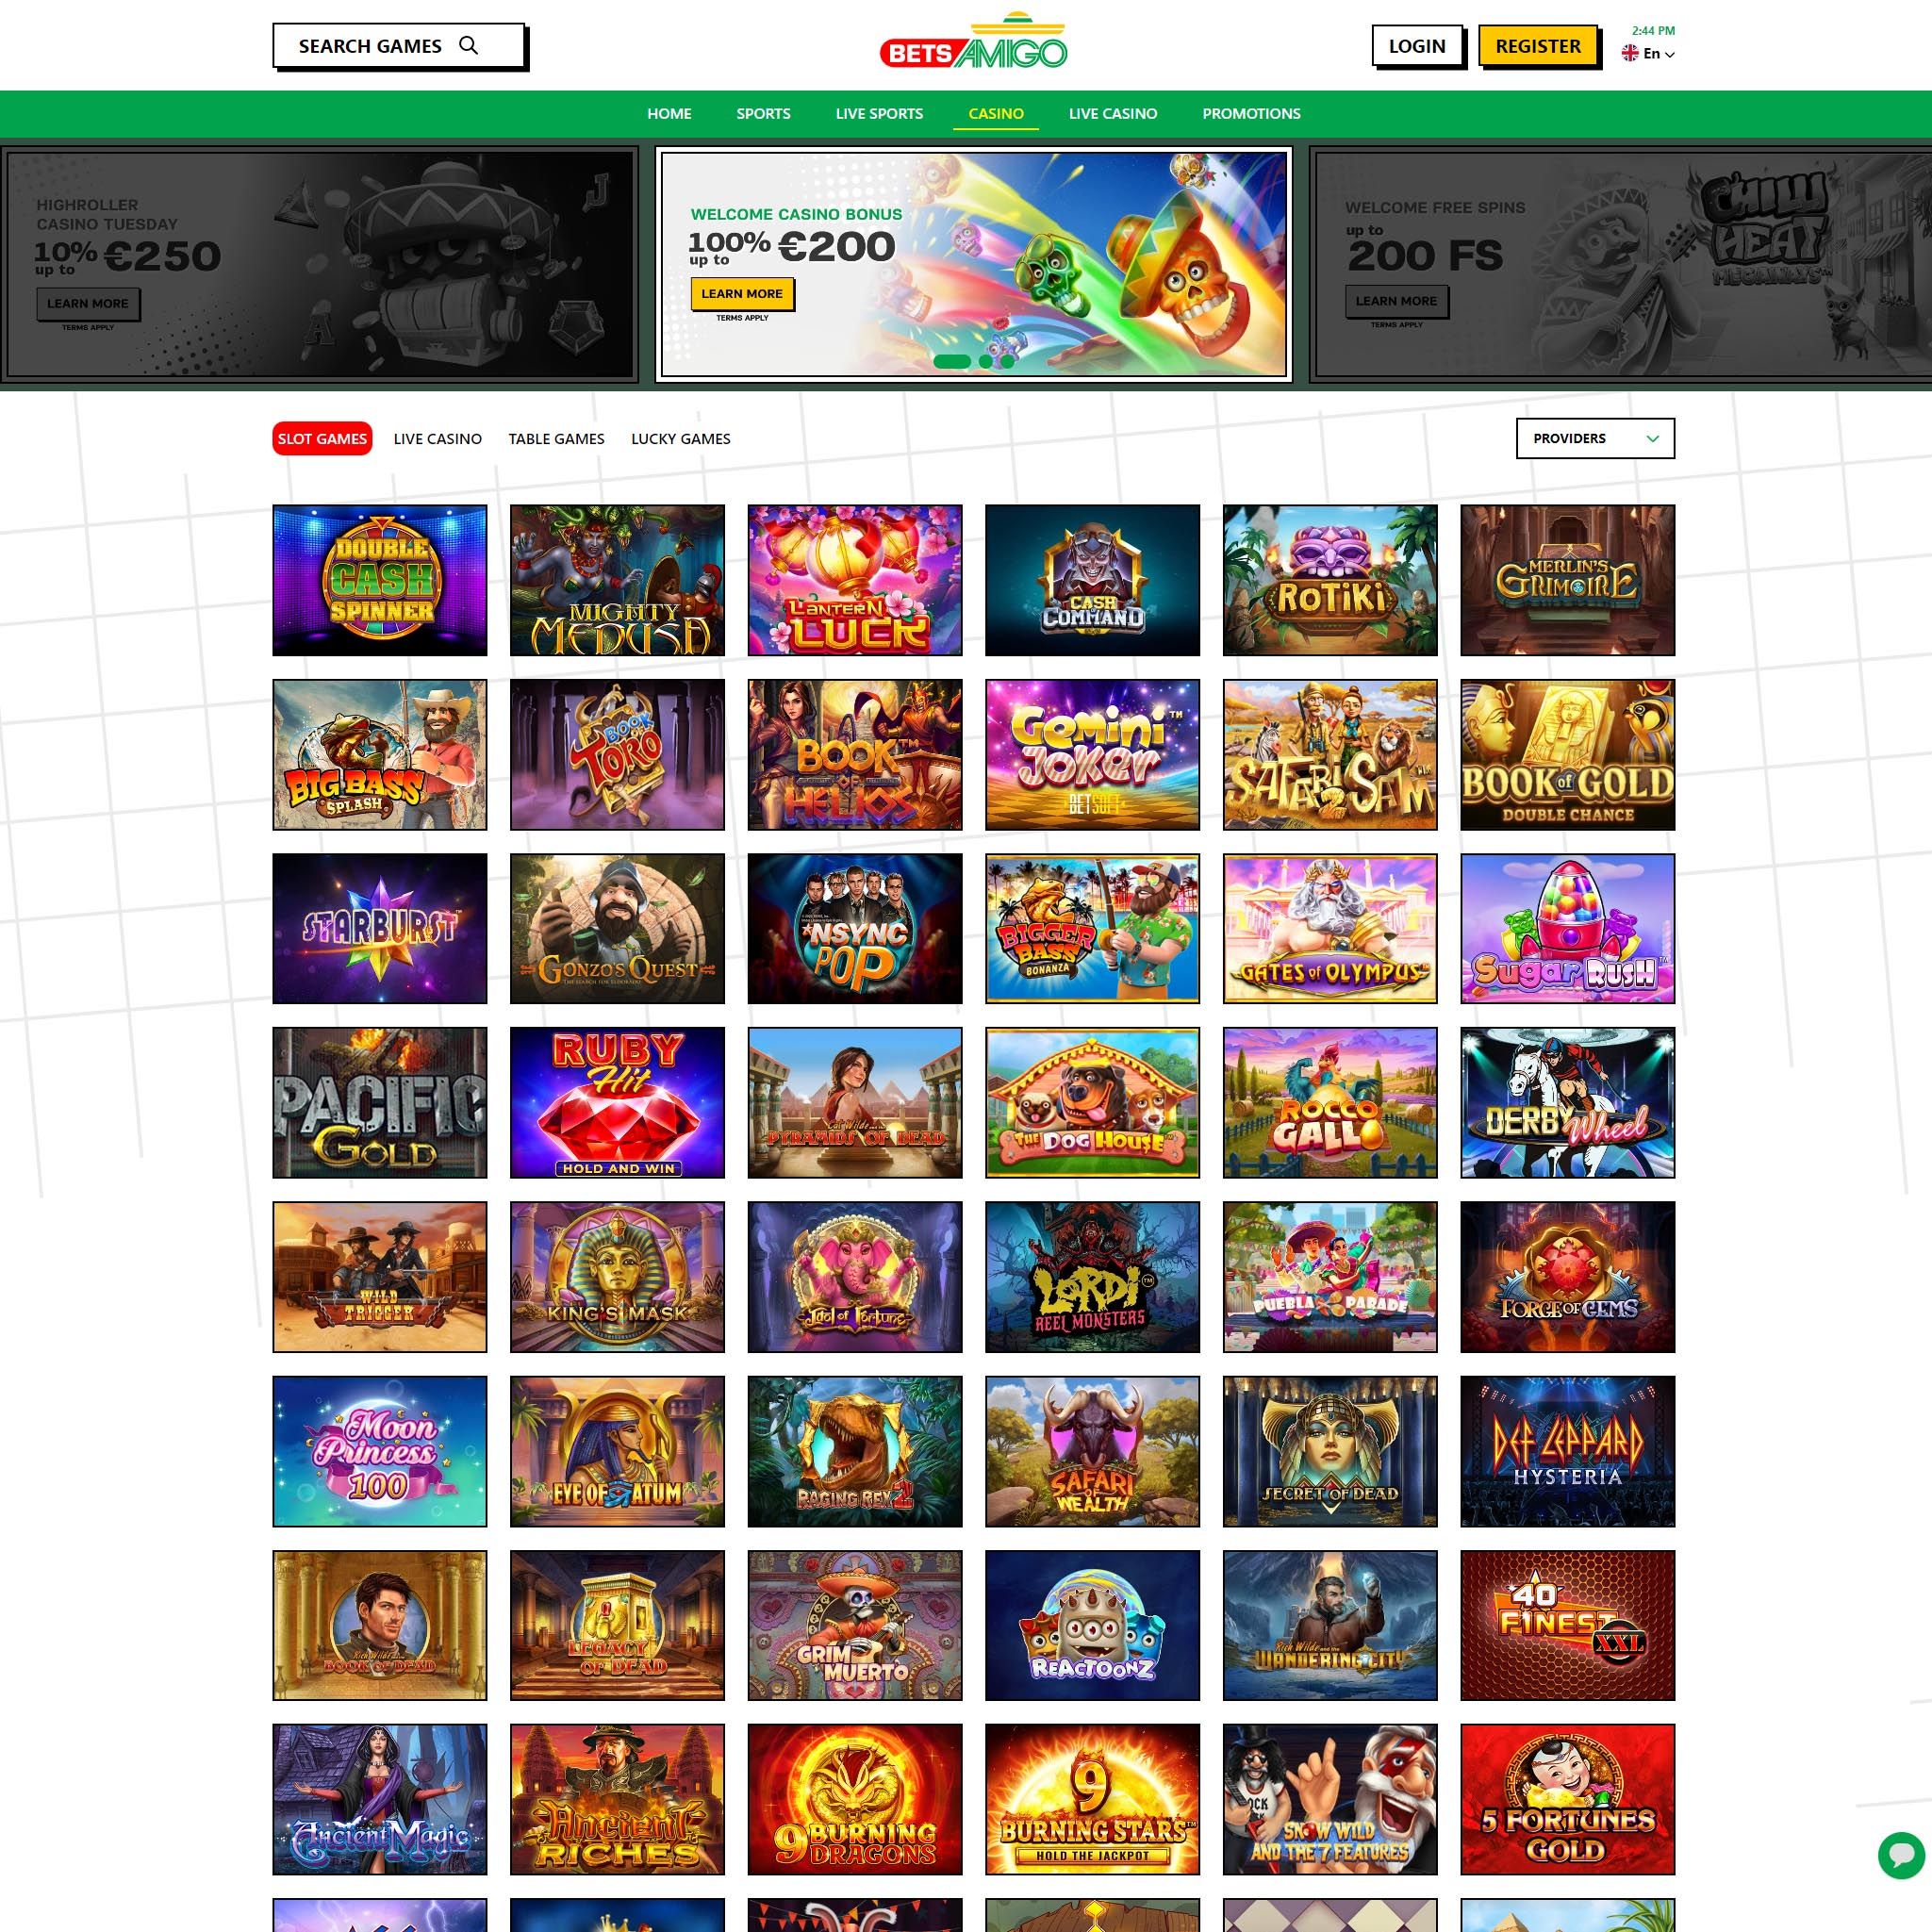 Betsamigo Casino full games catalogue